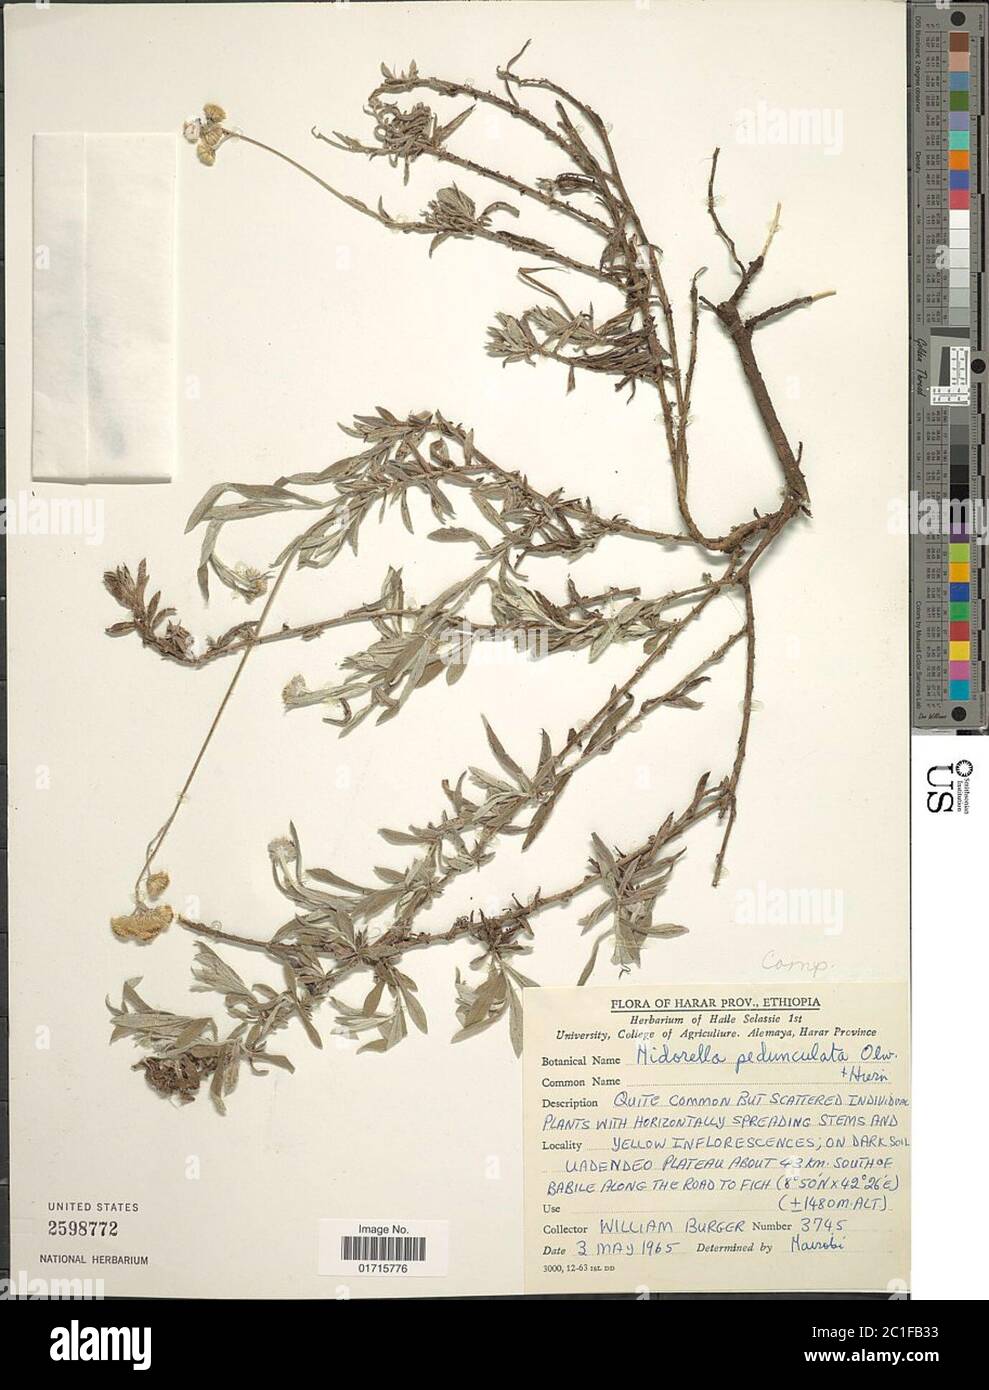 Nidorella pedunculata Oliv Nidorella pedunculata Oliv. Stock Photo